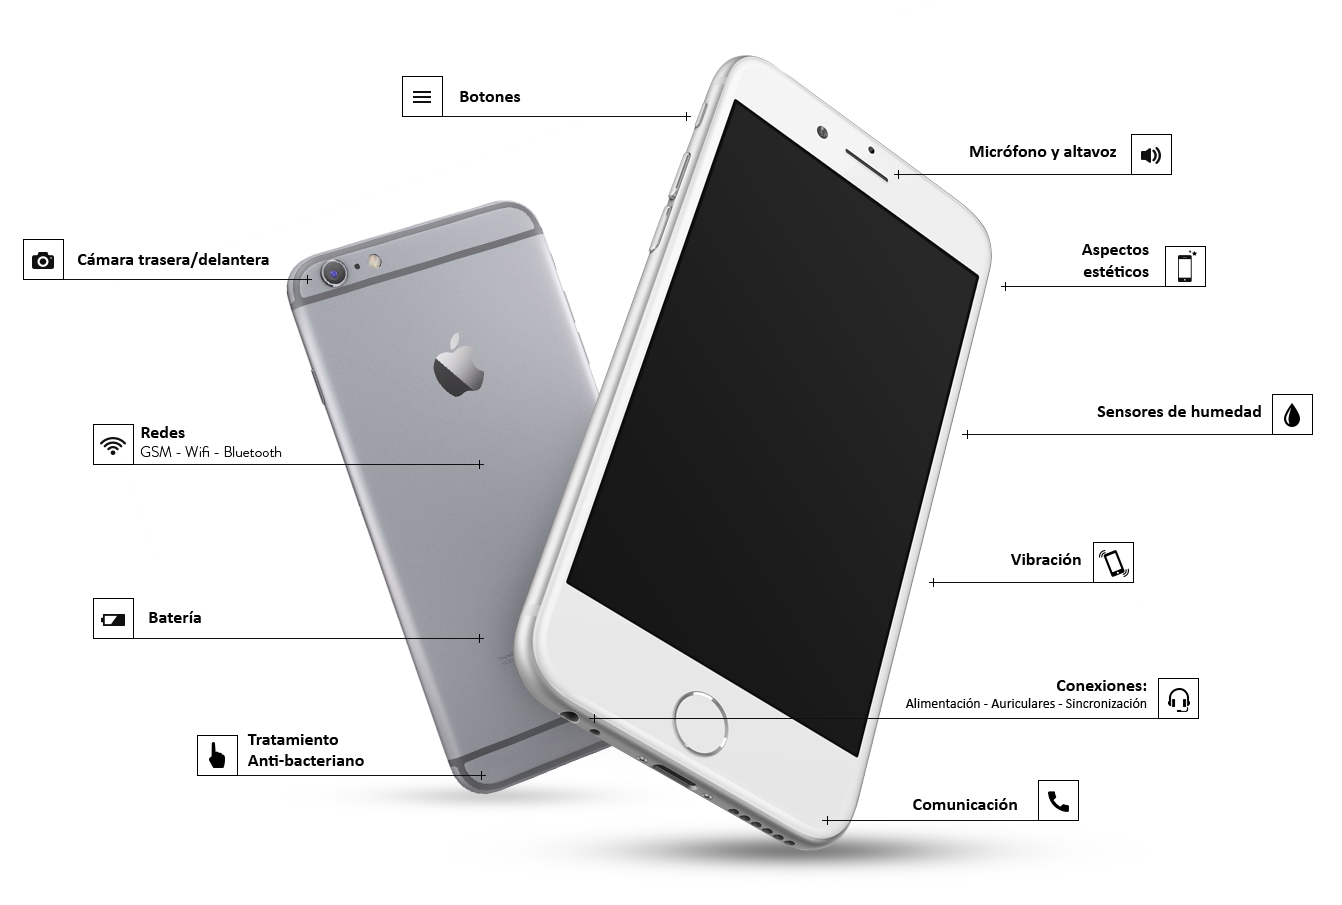 Llegan a Interbox los iPhone reacondicionados de Remade - Interbox - Donde Esta Airplay En Iphone 6